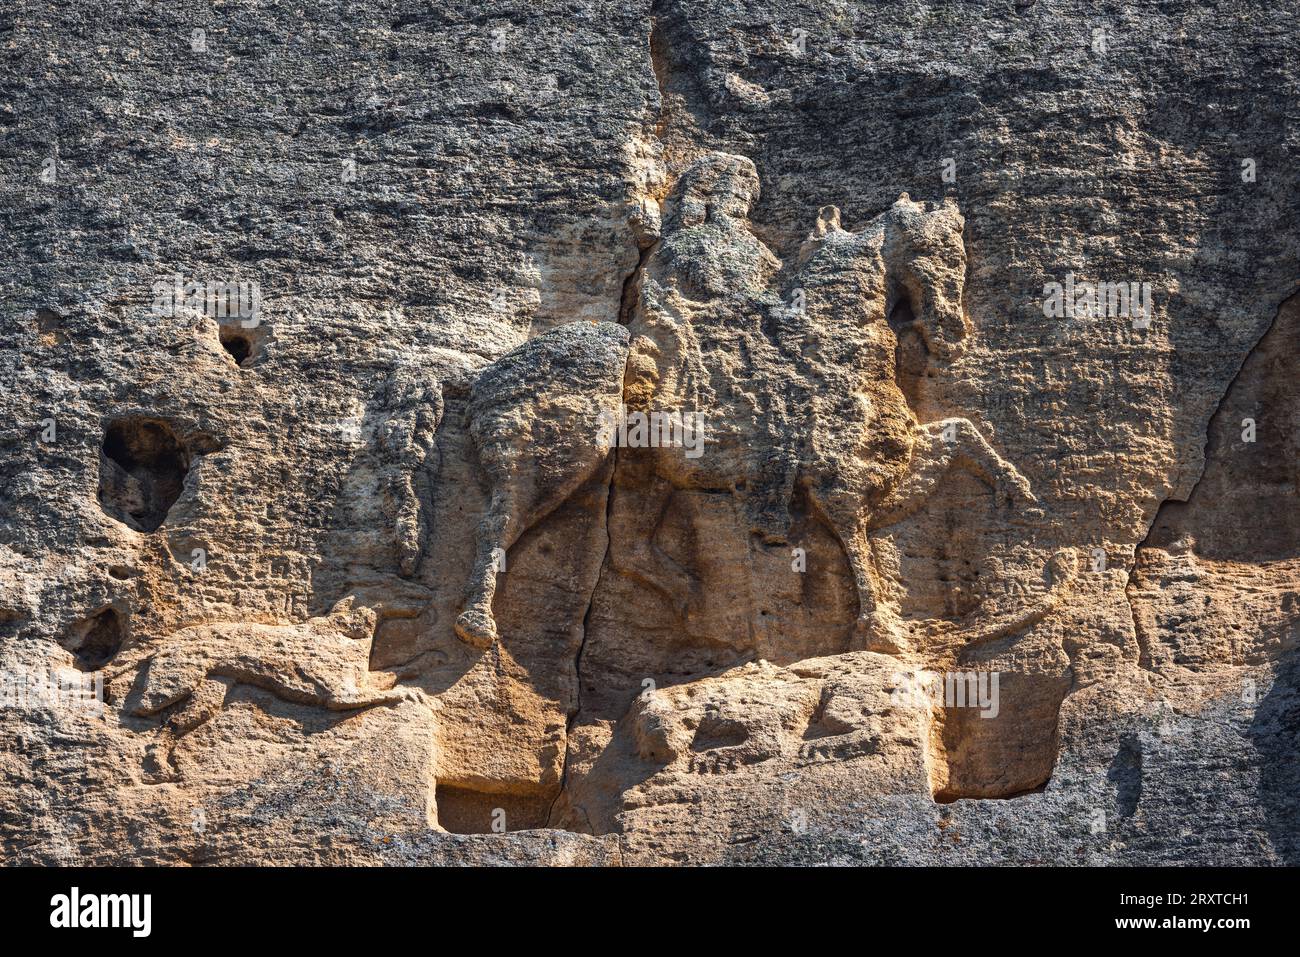 Madara Rider è un grande rilievo roccioso risalente al primo medioevo tra le rocce della grotta di montagna, Bulgaria, sito patrimonio dell'umanità dell'UNESCO. Madarski konnik Foto Stock